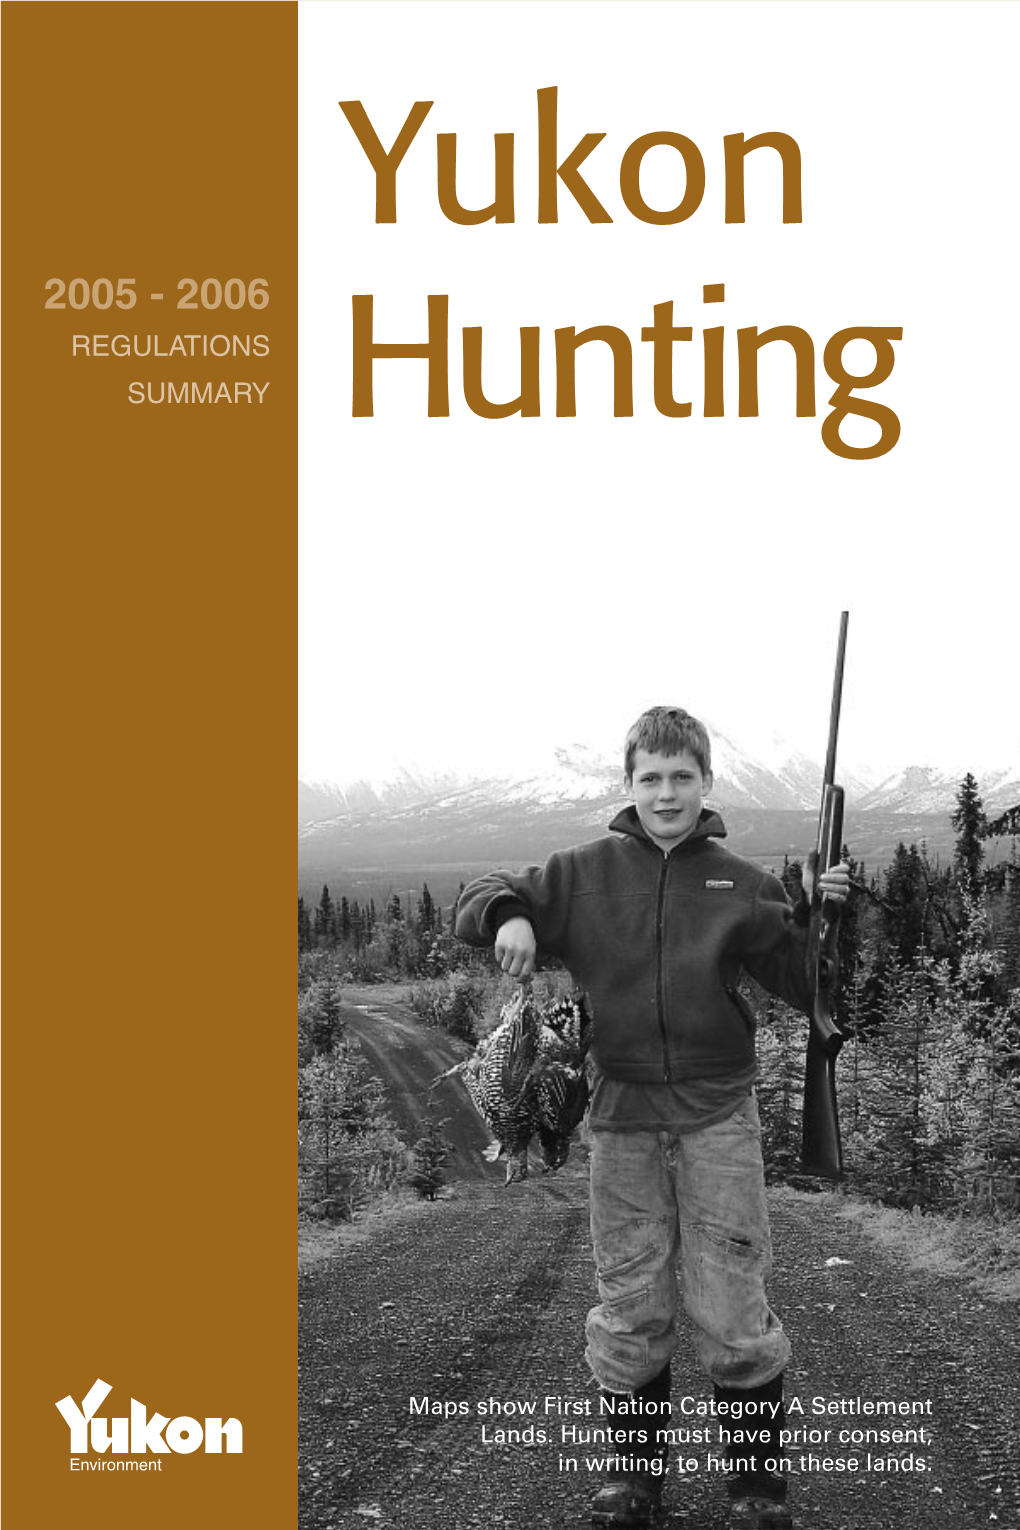 REGULATIONS SUMMARY Hunting